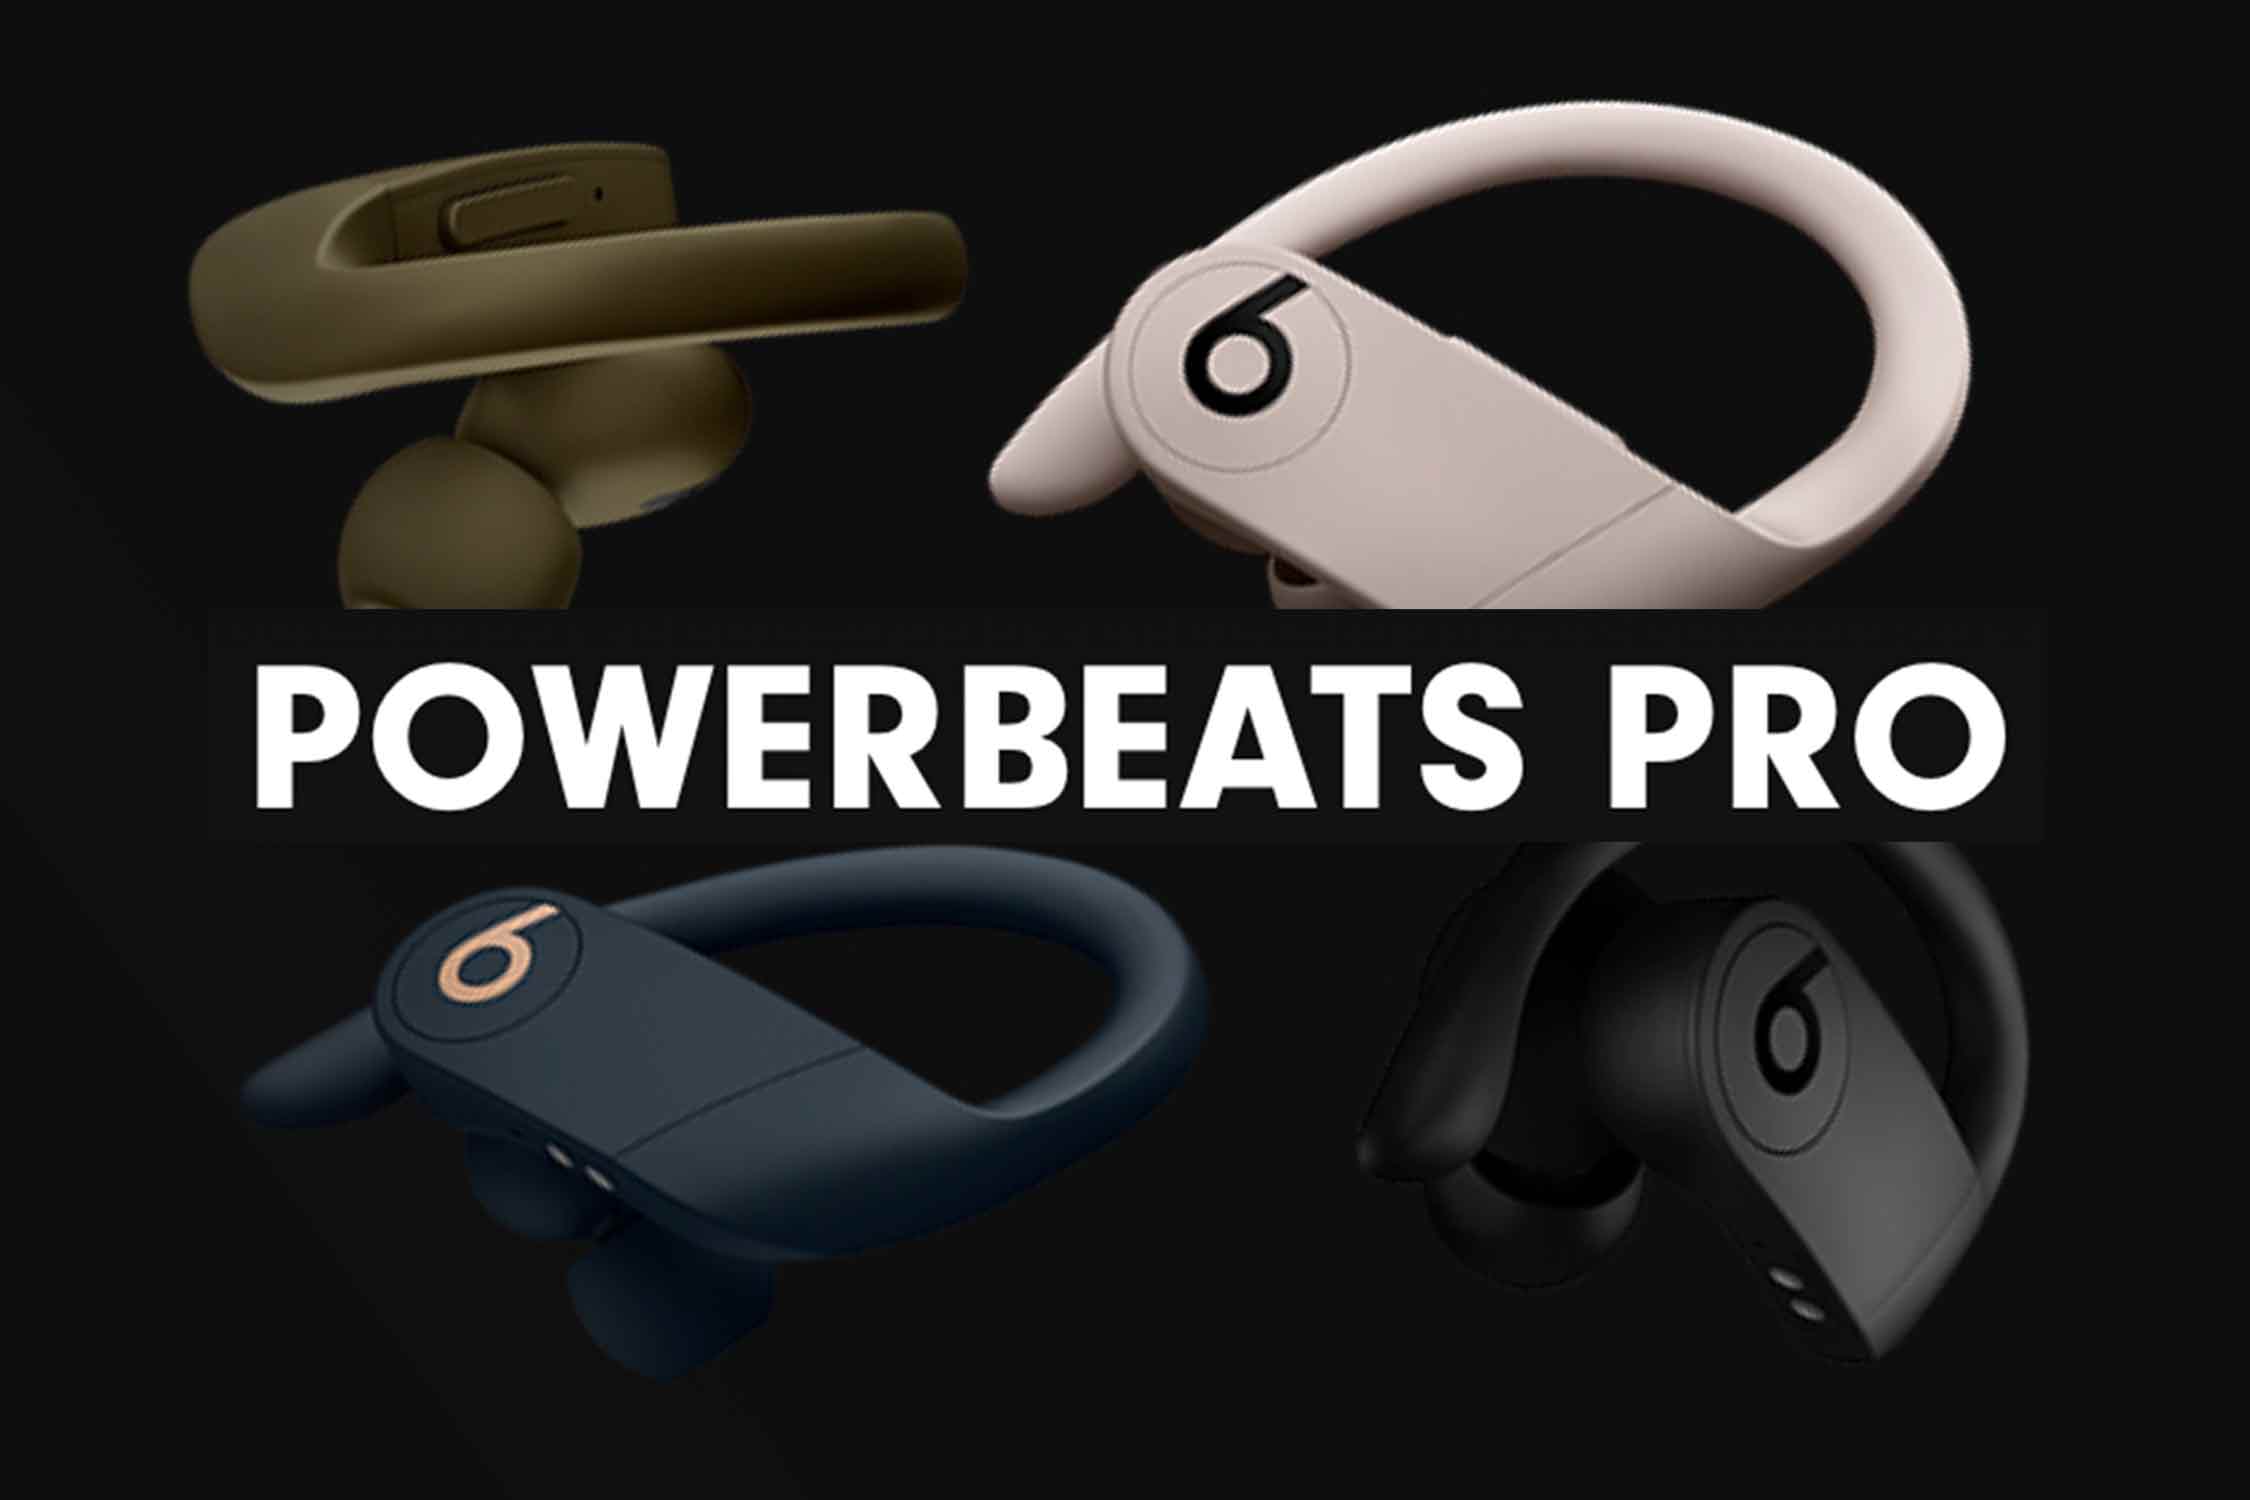 Powerbeats Proは買いか?音漏れや音質など気になる15項目を解説!性能や 